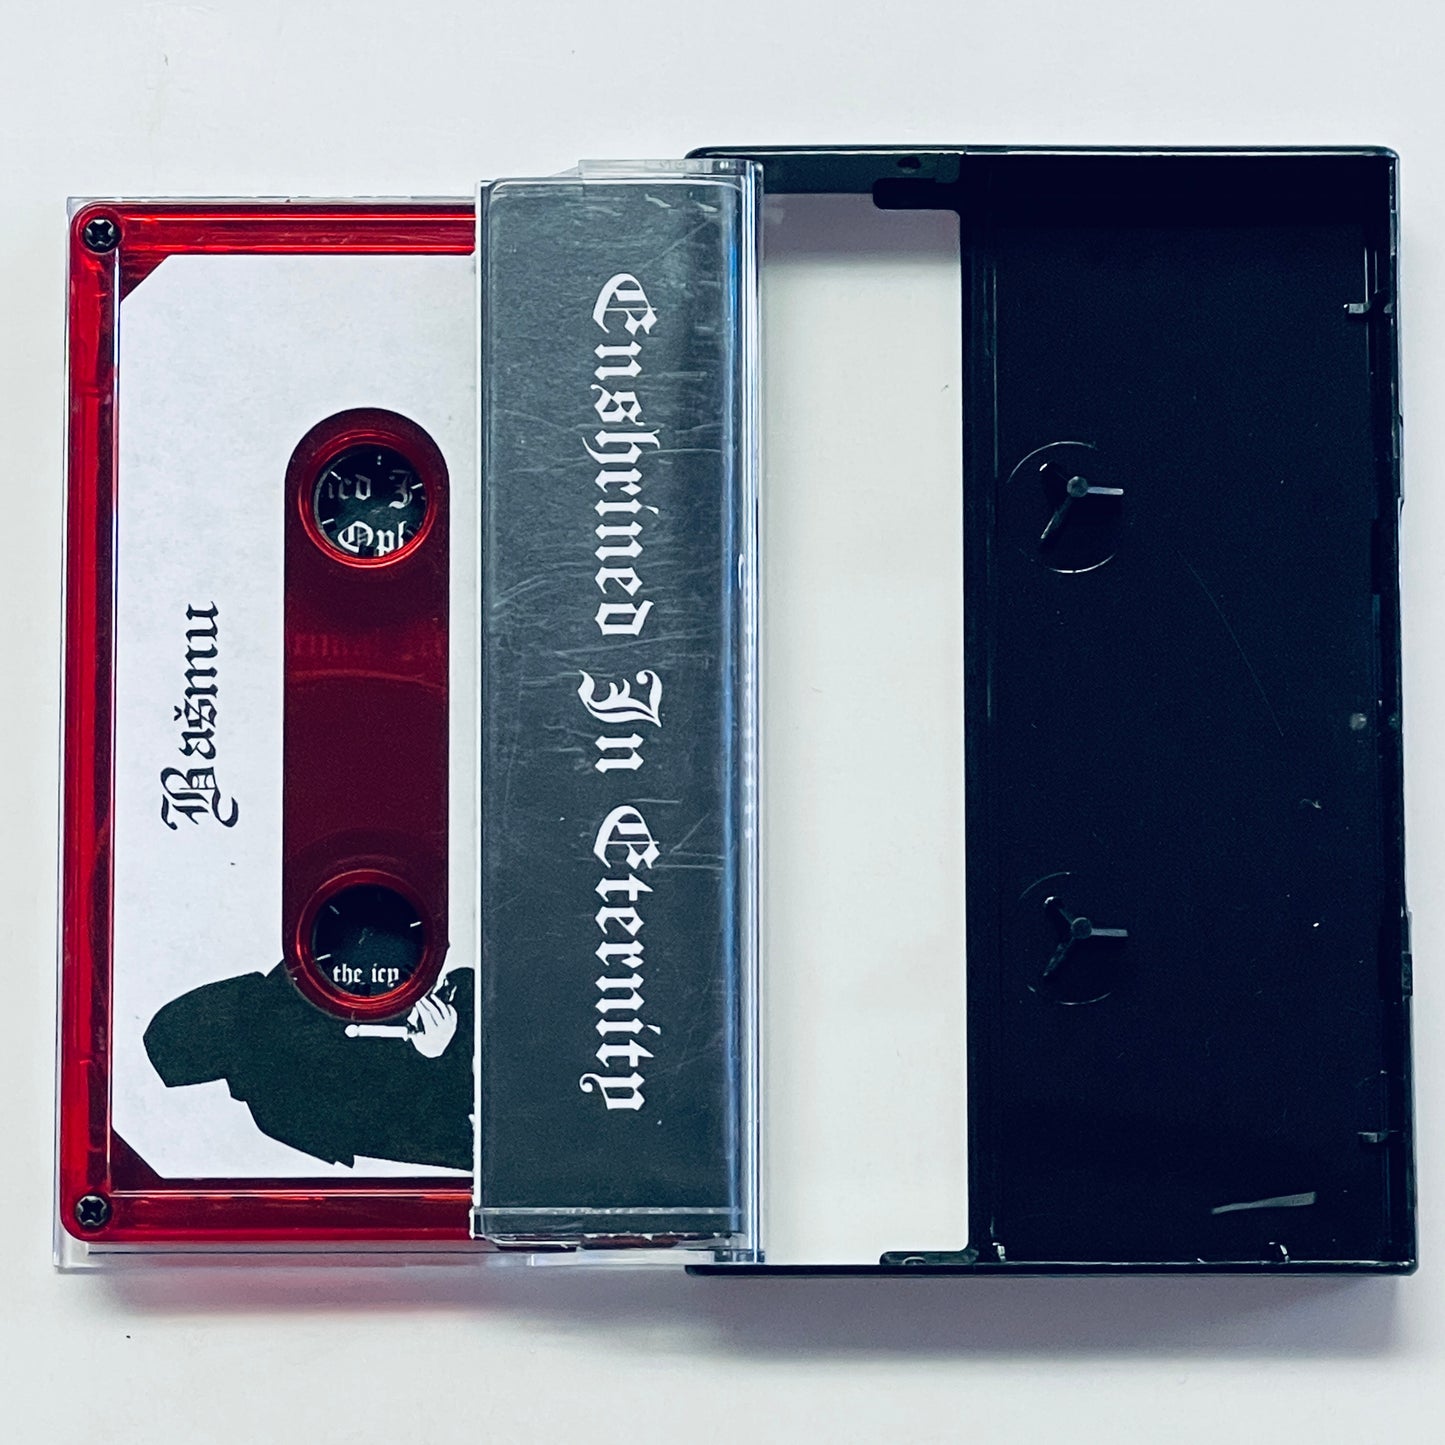 Basmu - Enshrined In Eternity cassette tape (used)